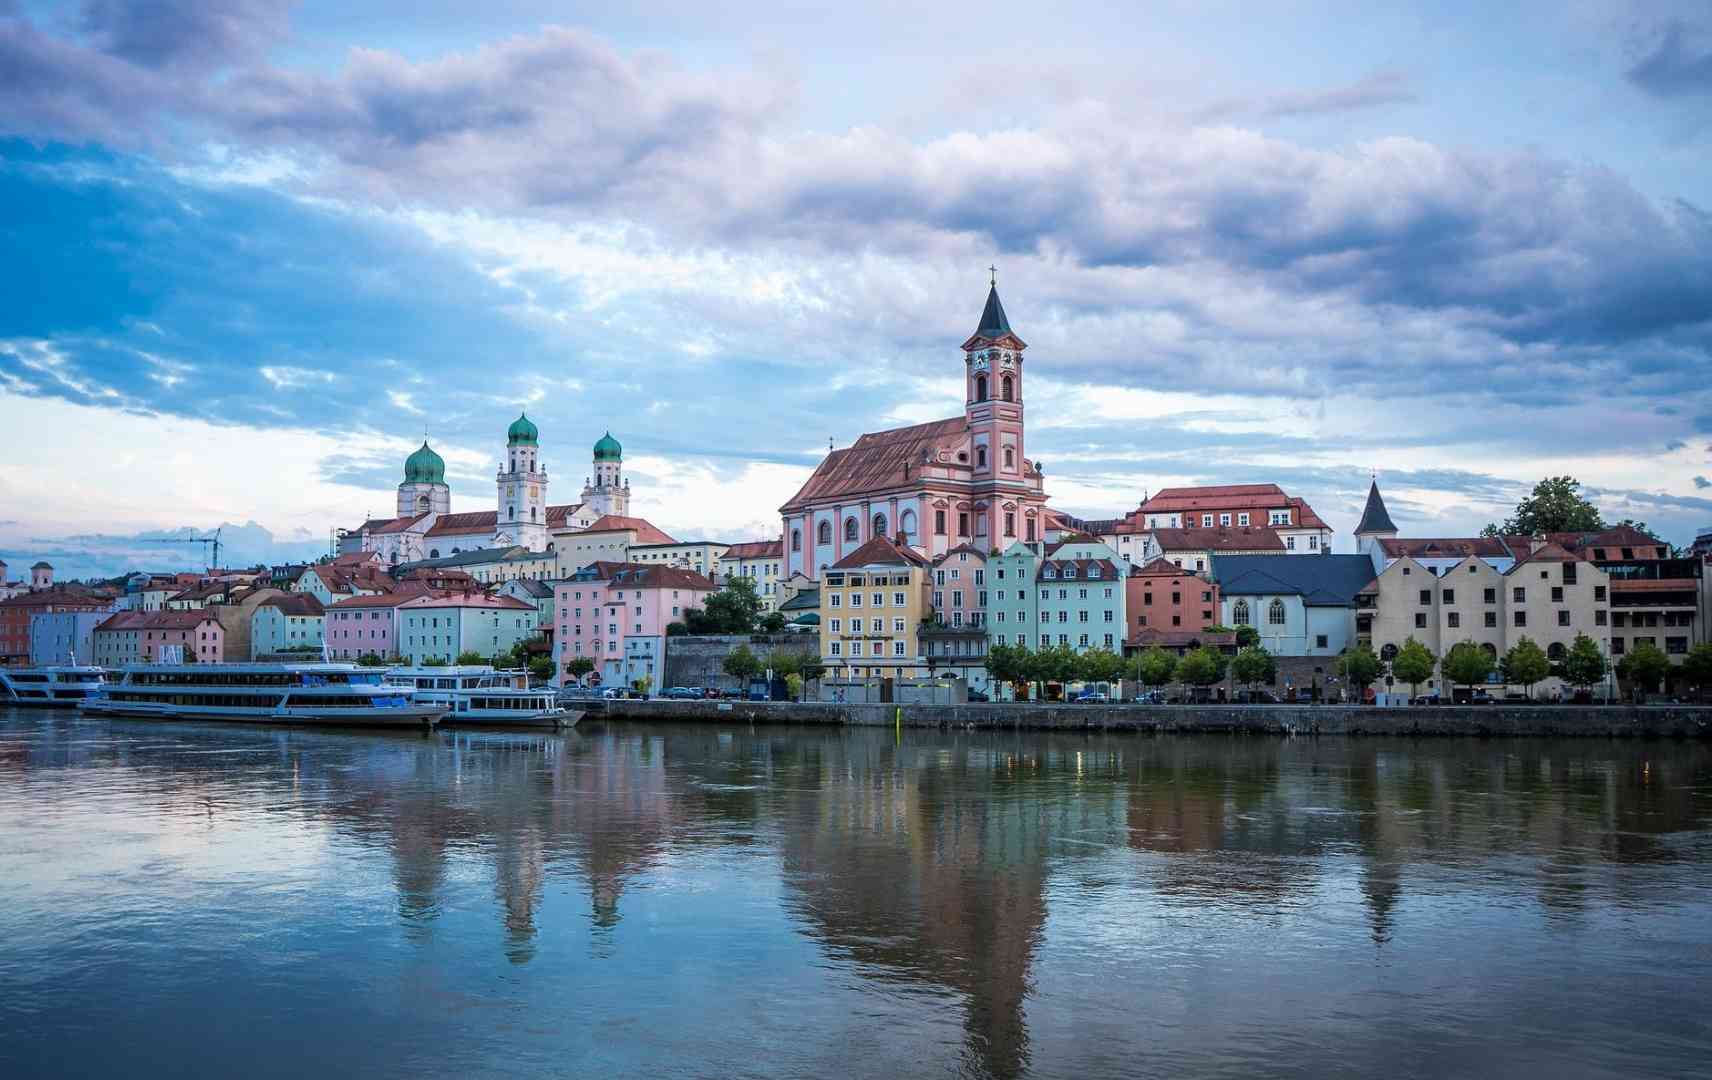 Blick auf die Stadt Passau an der Donau